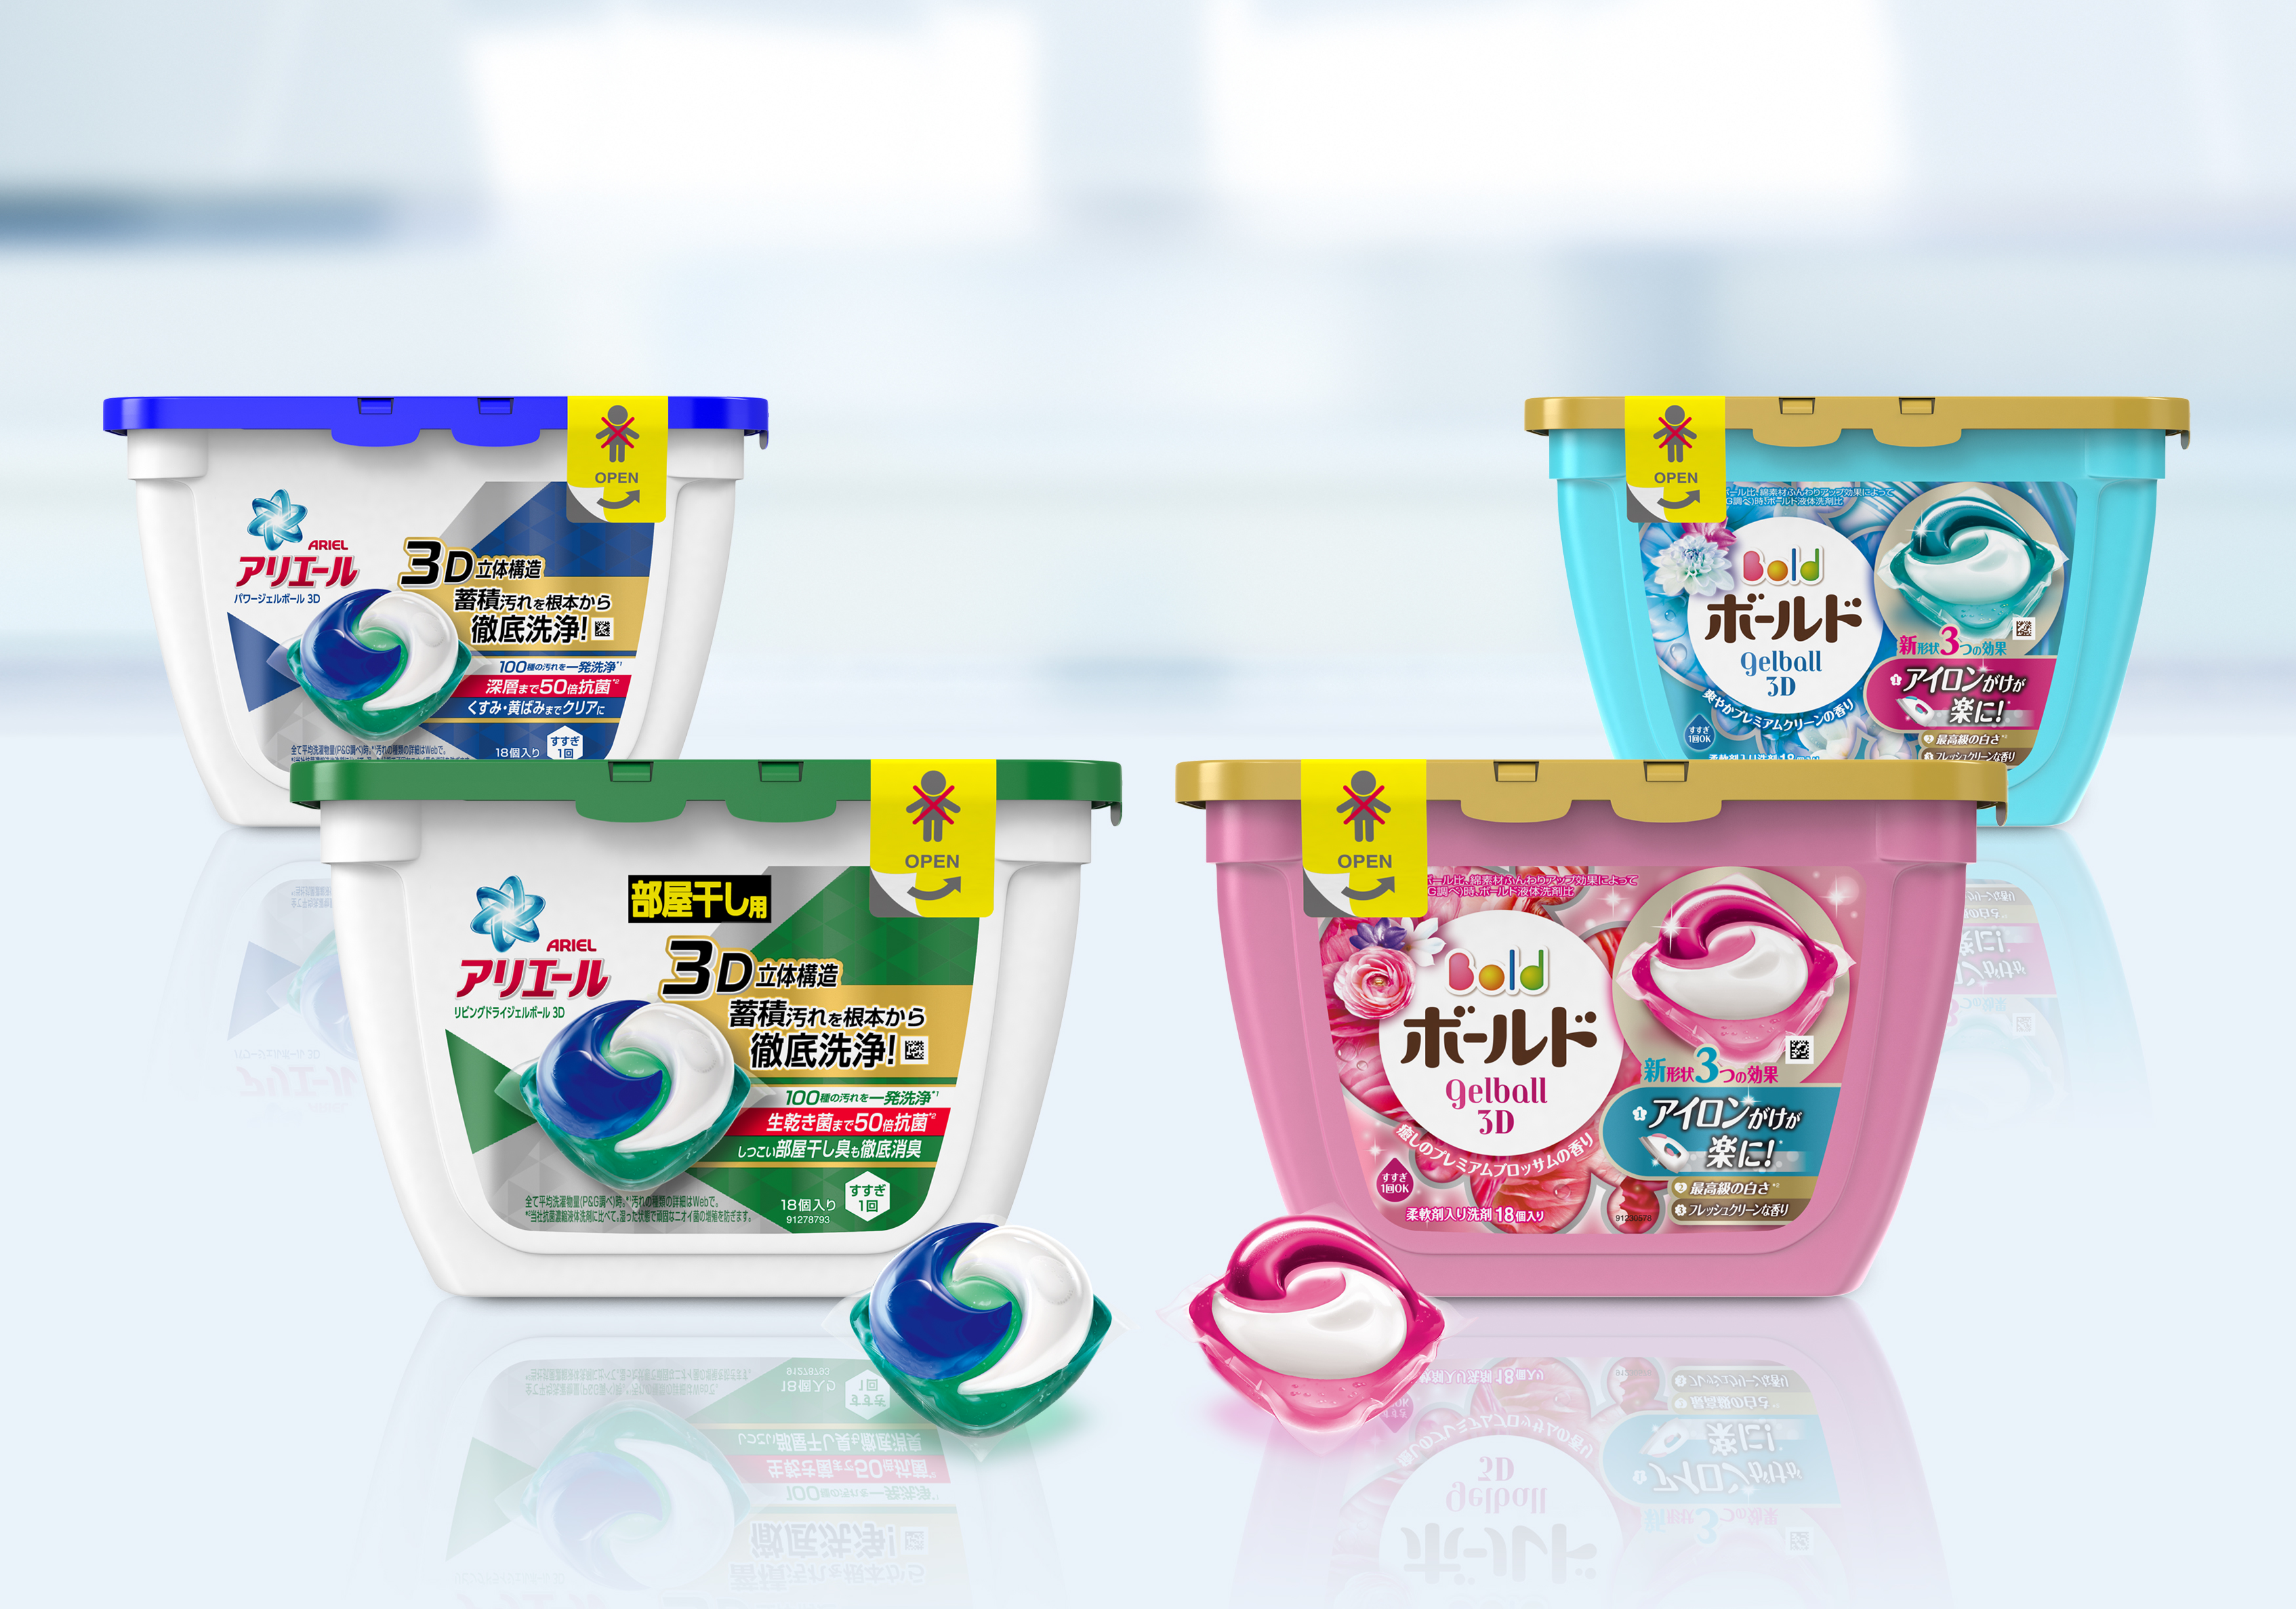 洗剤は 鮮度で選ぶ時代へ アリエール ジェルボール3d ボールド ジェルボール3d 9月上旬に新発売 ｐ ｇジャパン合同会社のプレスリリース